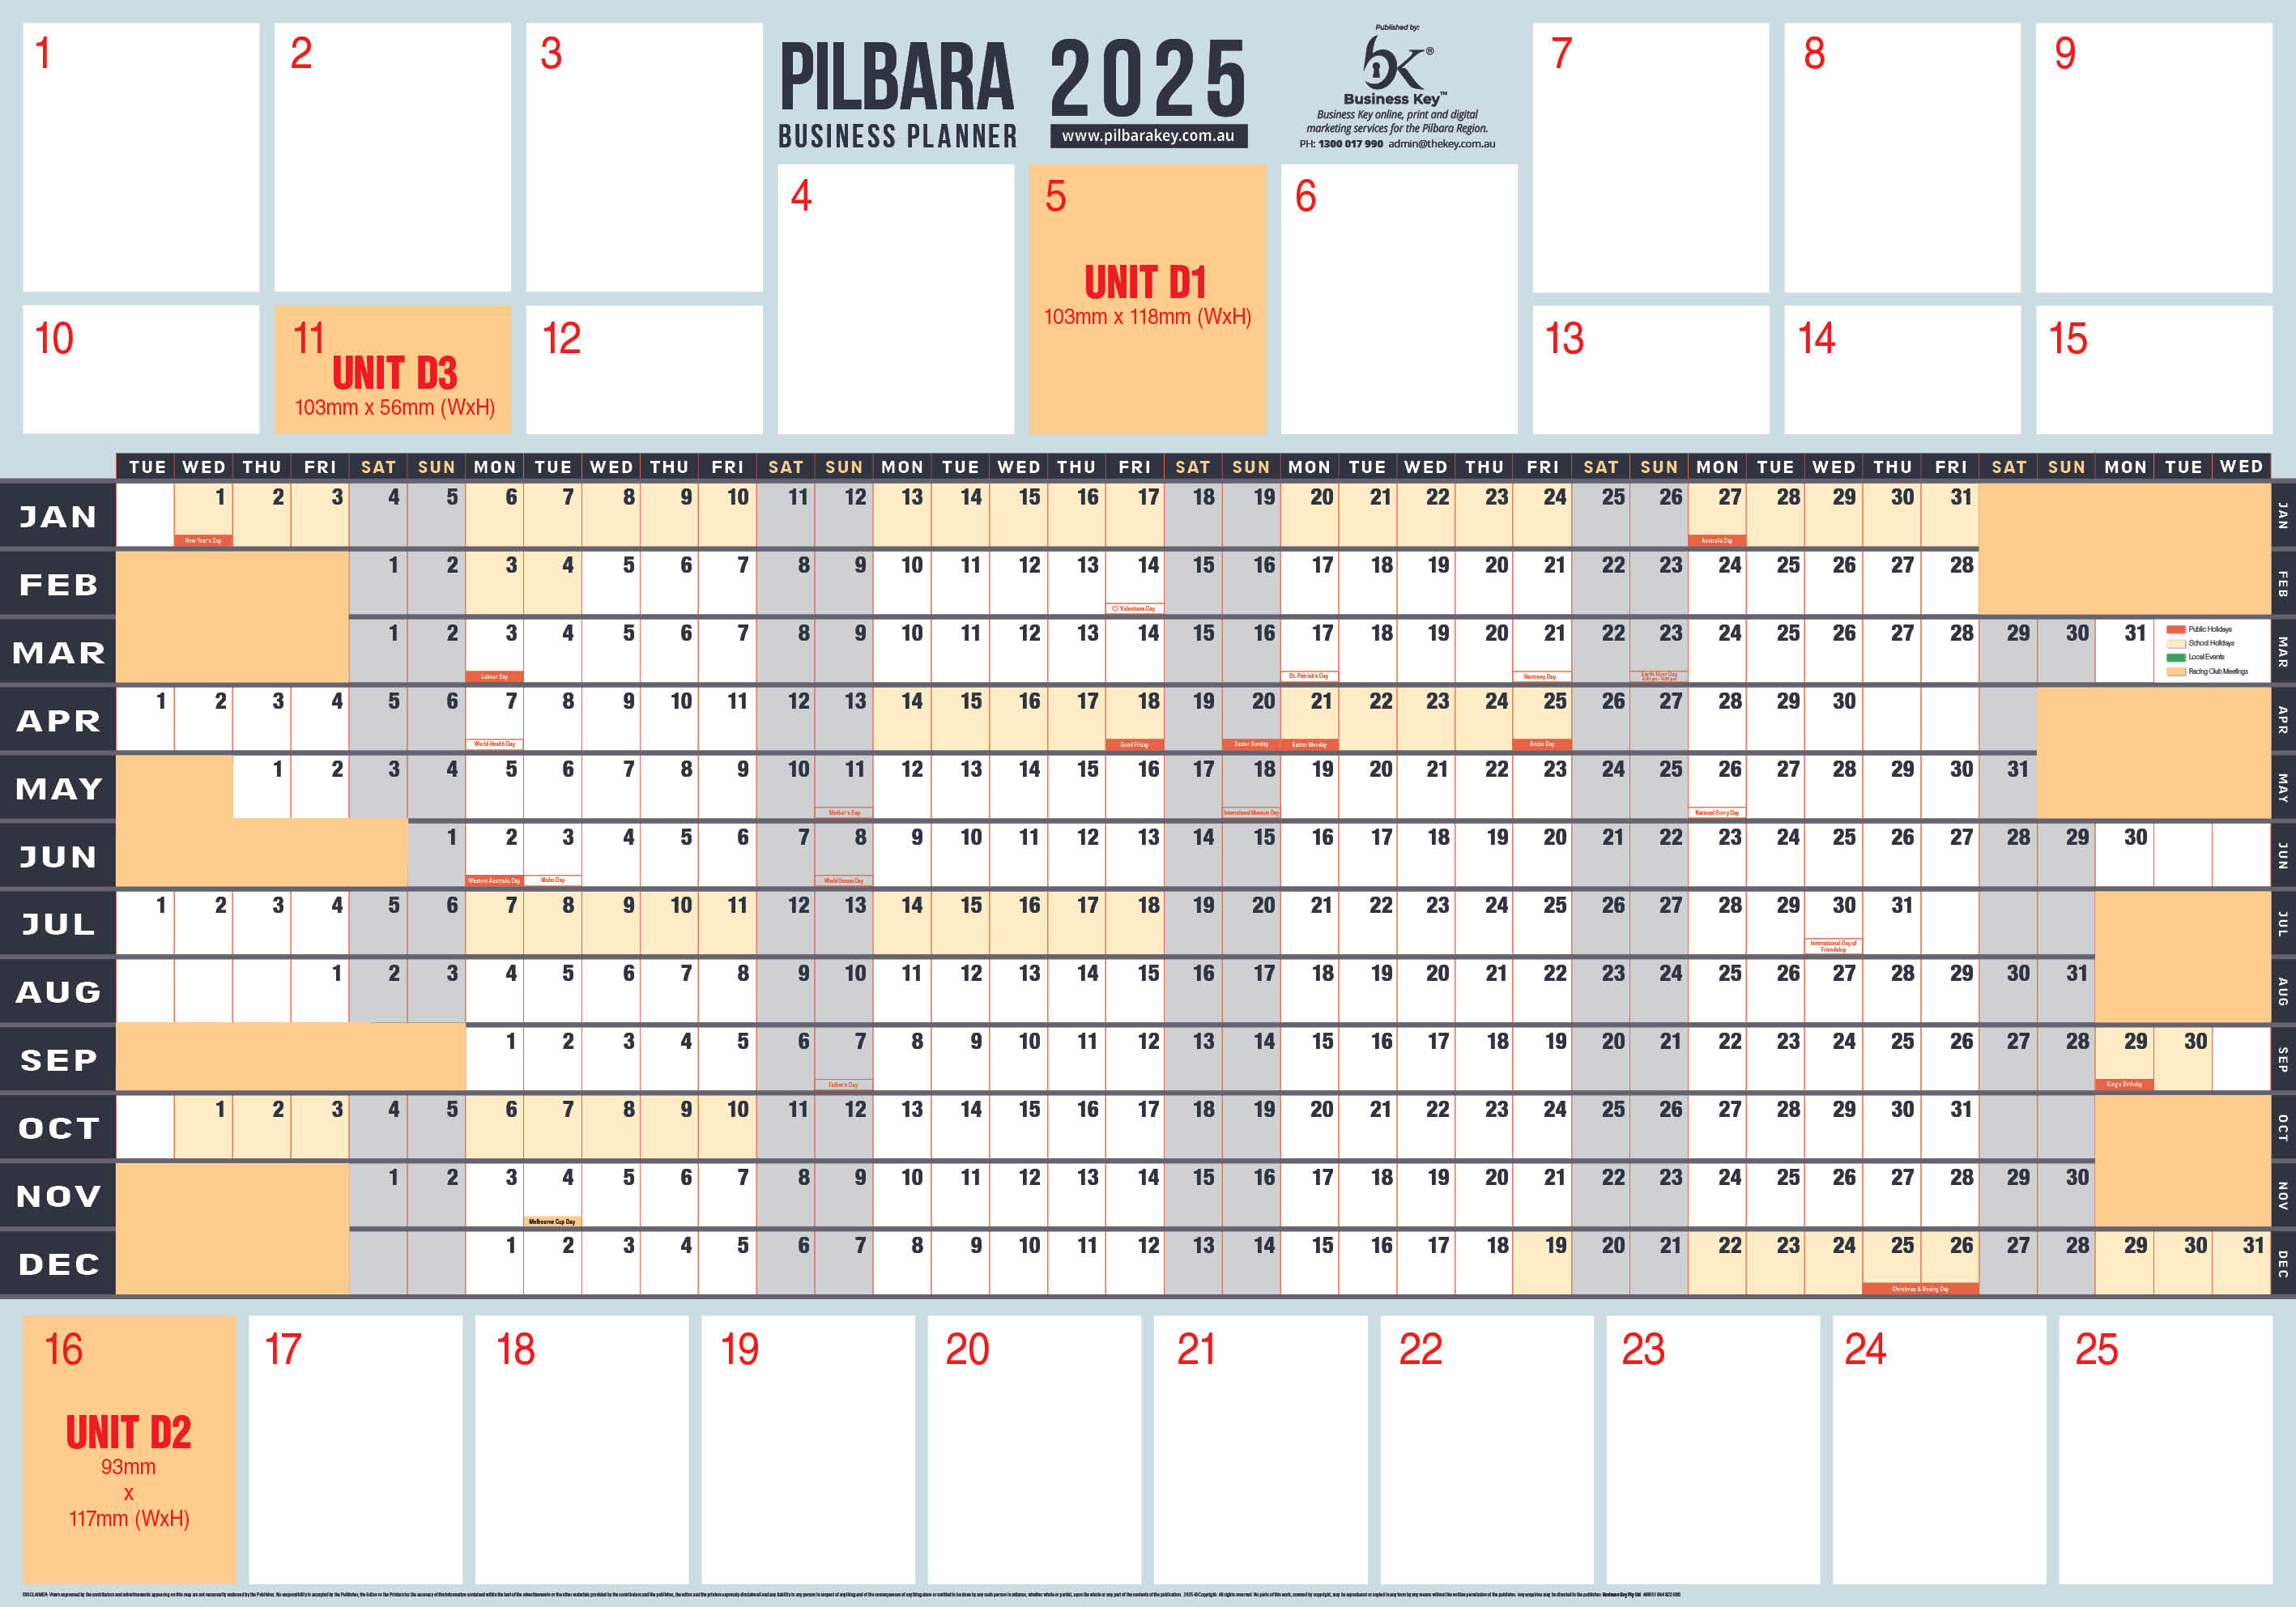 Pilbara Business Planner 2025